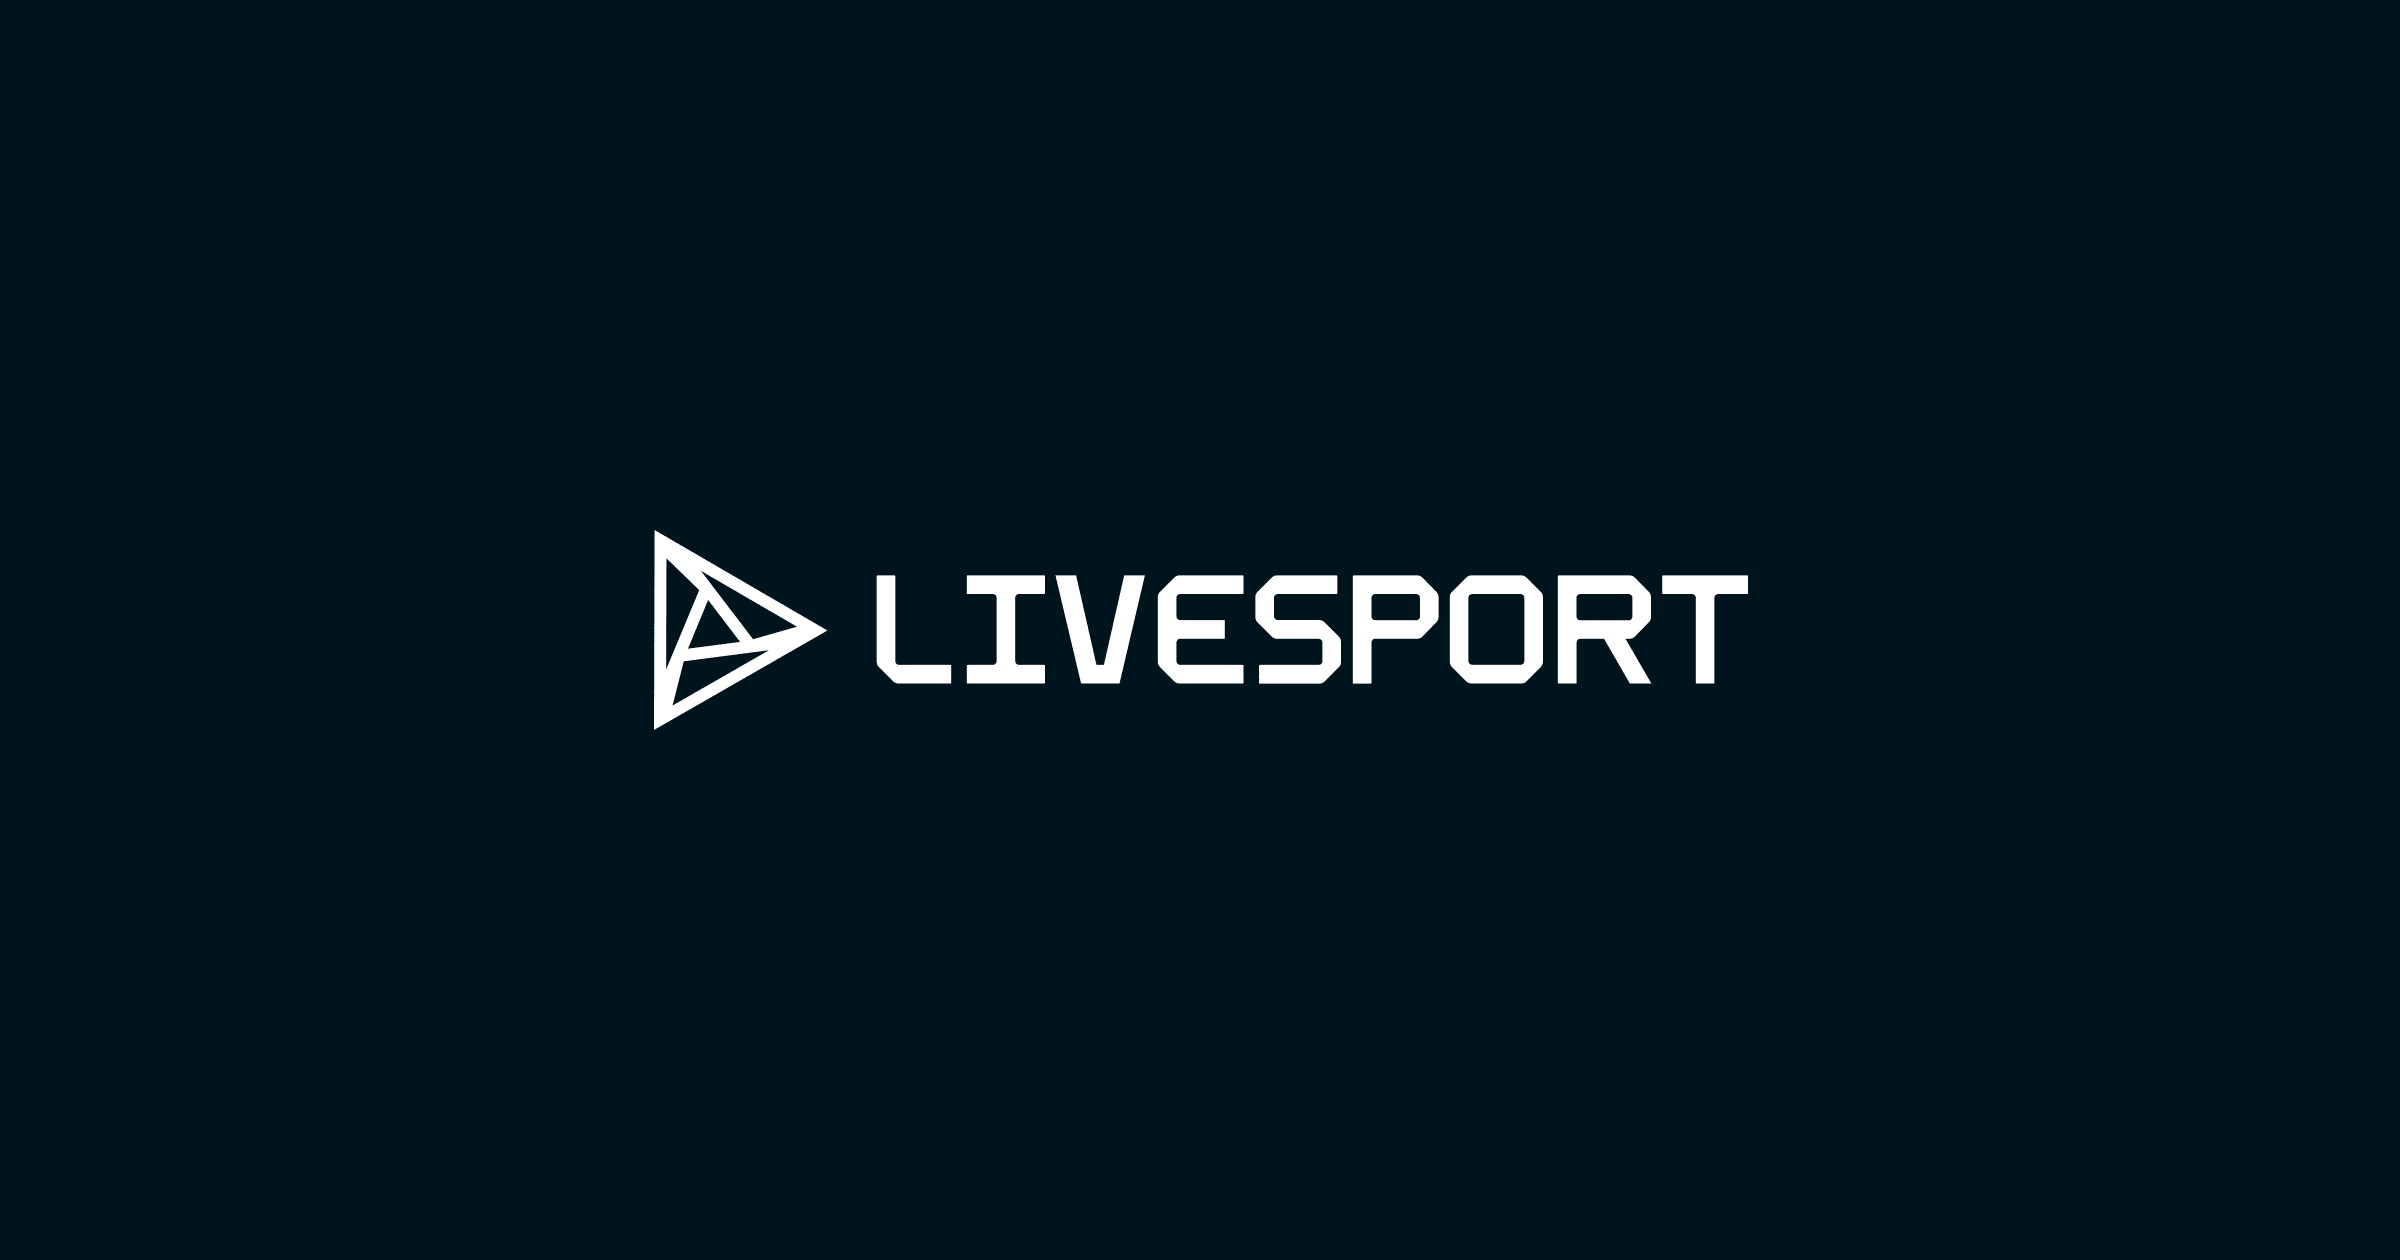 탁구: 올림픽 남자 2020 라이브 - 결과, 일정 - Livesport.com